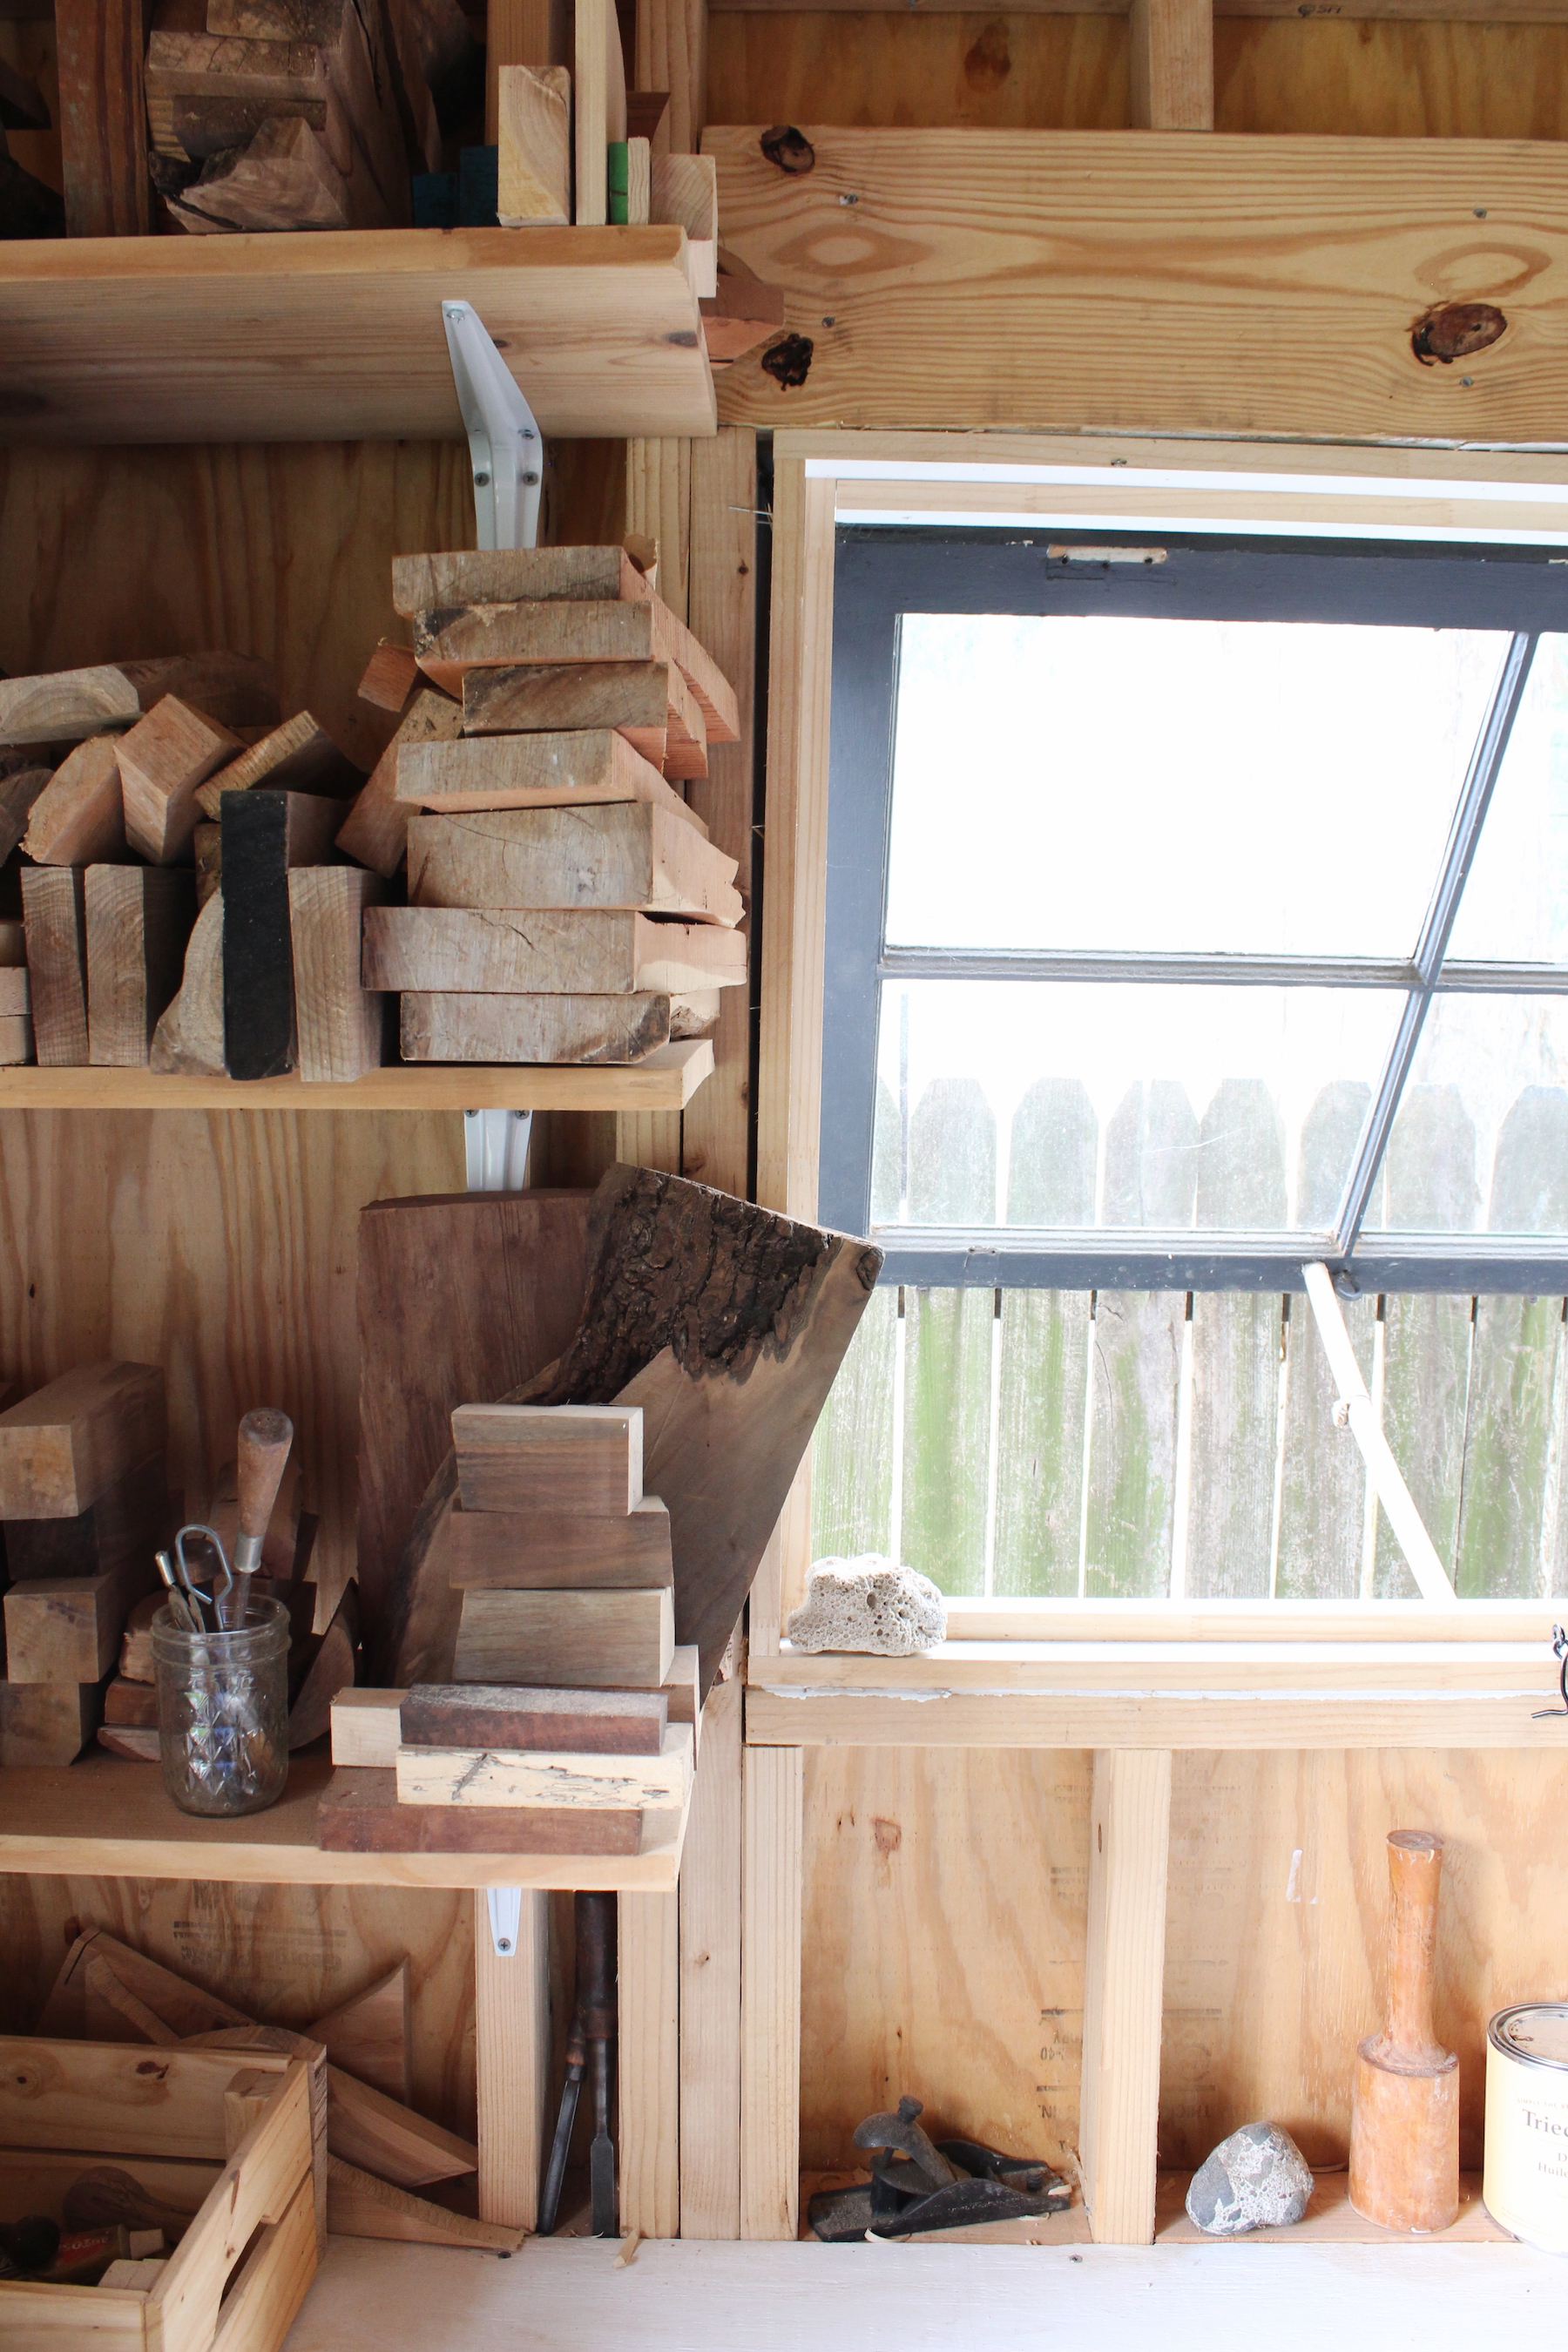 backyard shed wood carving workshop